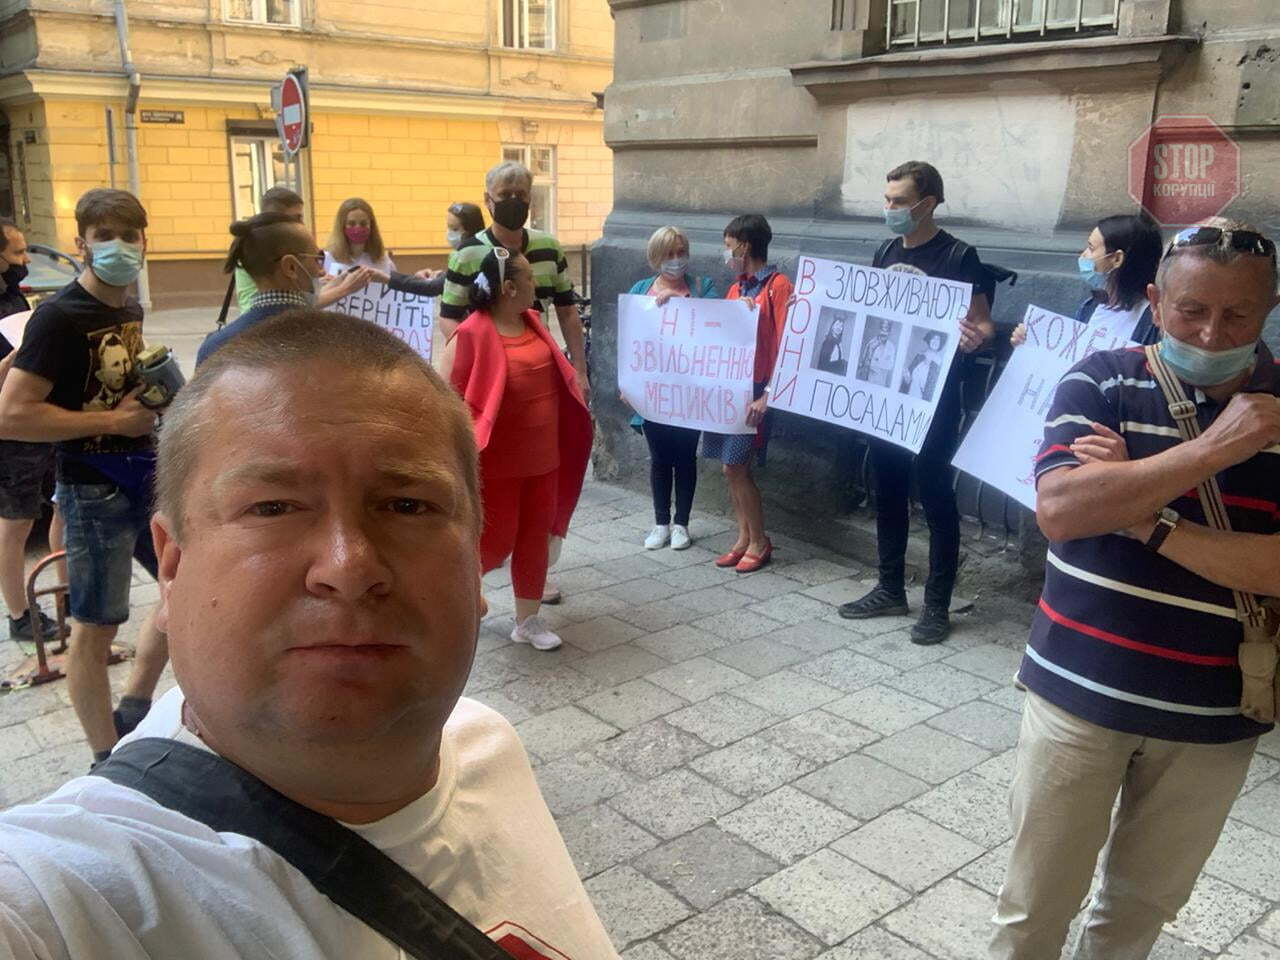  Акція на підтримку звільненого лікаря Василя Штибеля. Фото: СтопКор